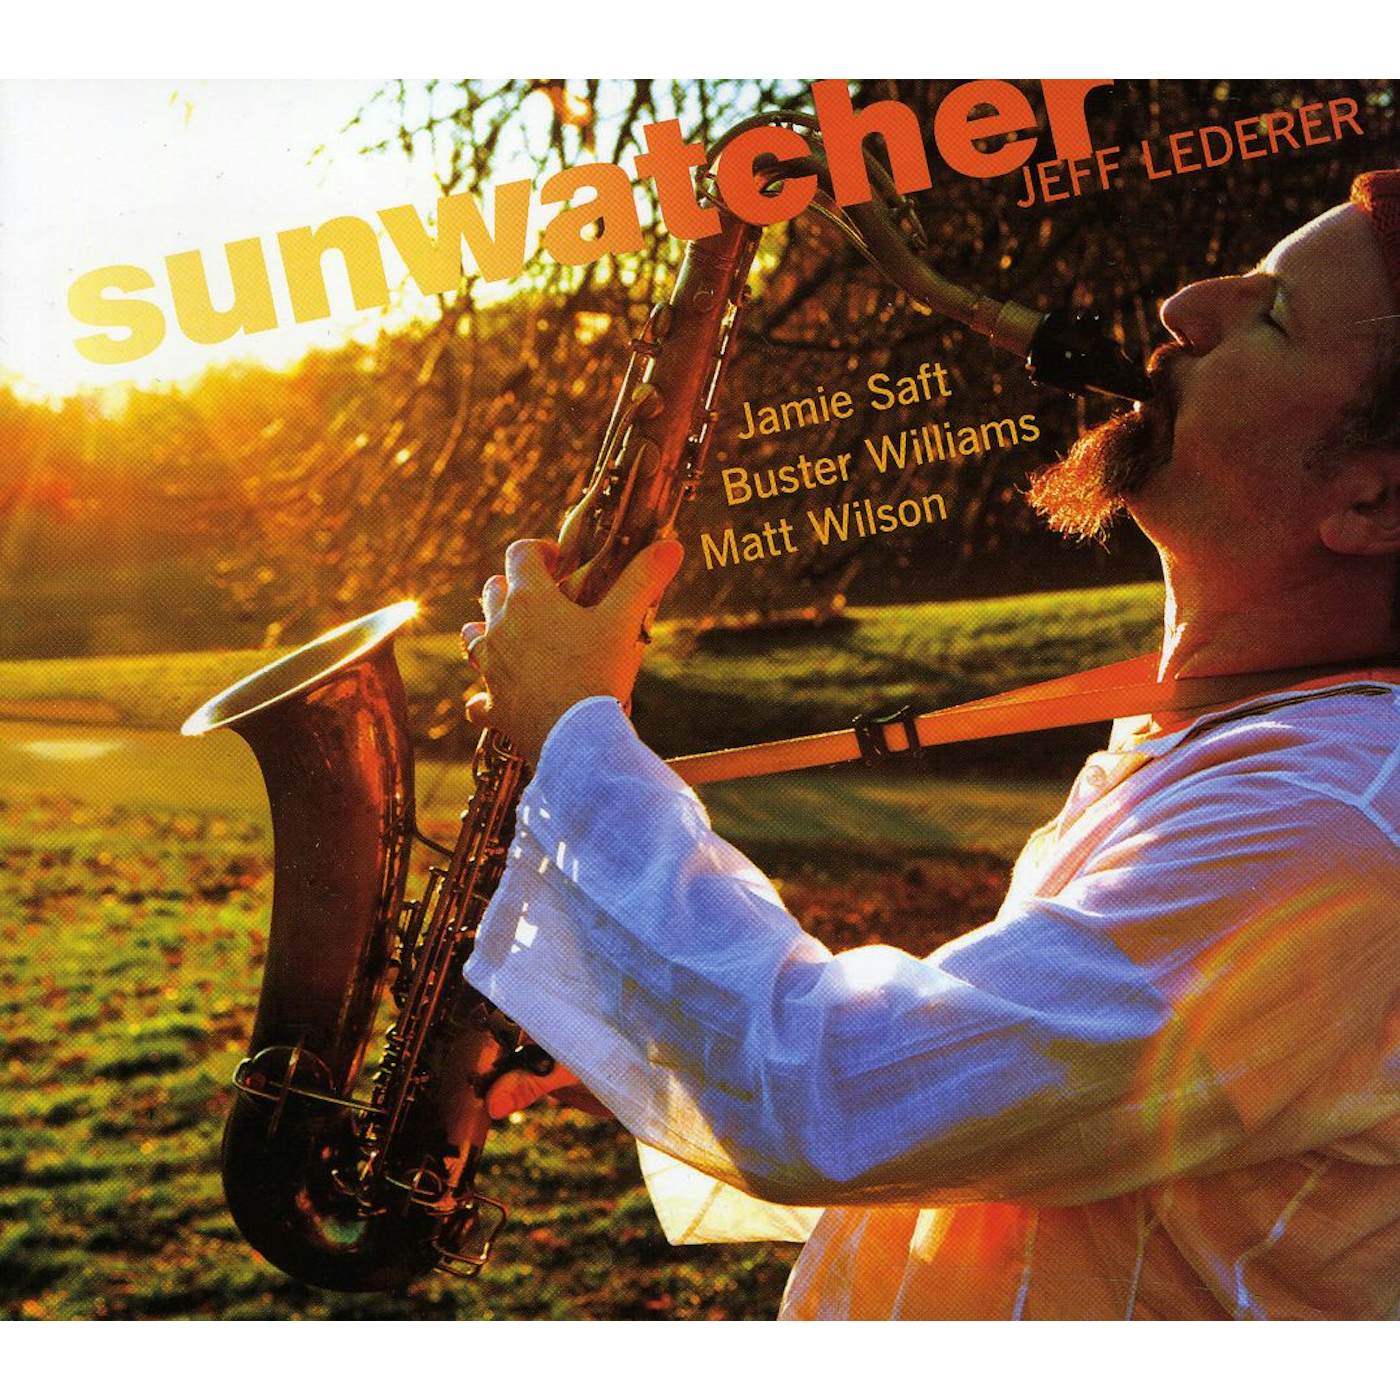 Jeff Lederer SUNWATCHER CD